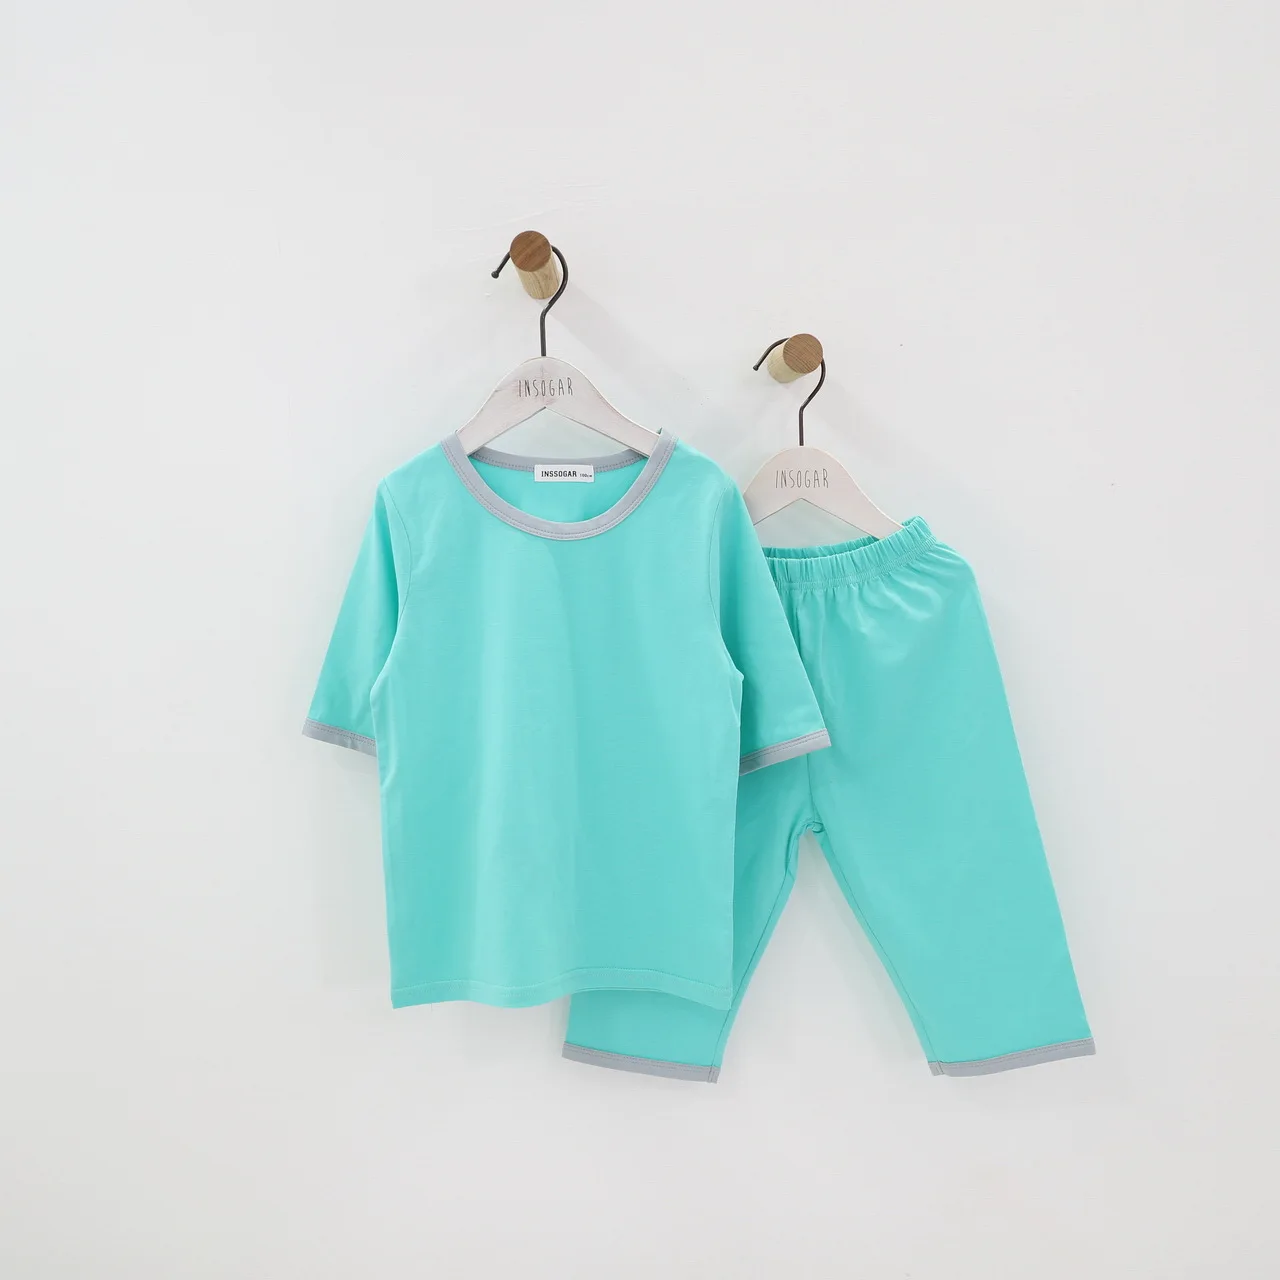 Футболка на день рождения для девочек, хлопковые пижамы Odell Летний Тонкий костюм для мальчиков, кондиционер детские летние пижамы - Цвет: Зеленый